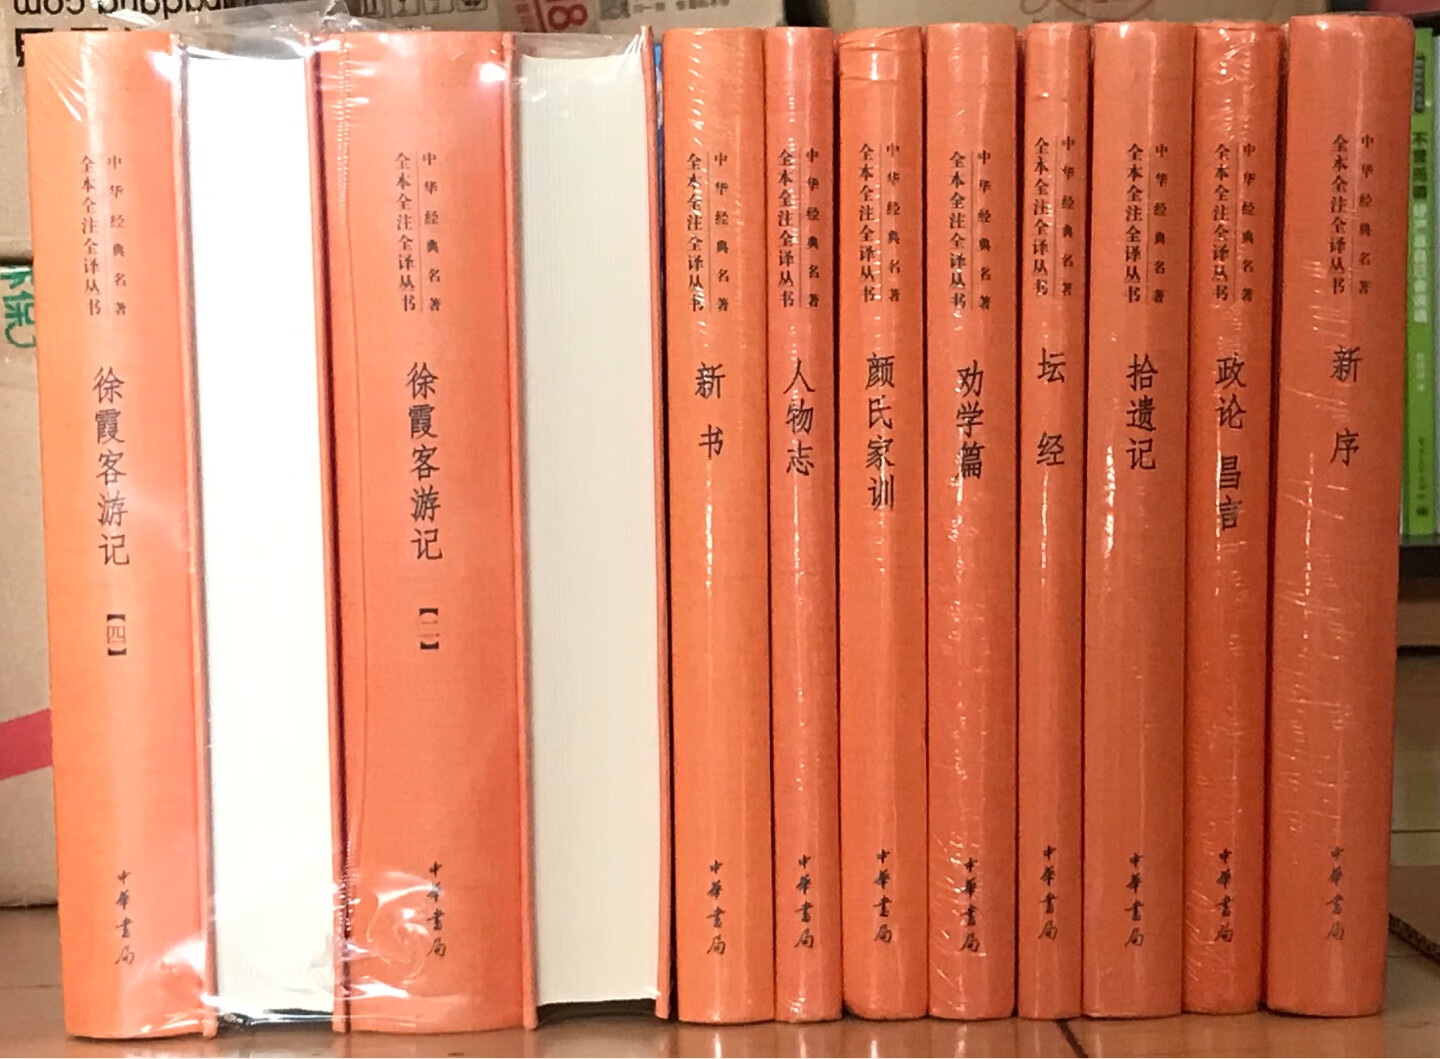 中华书局这套《中华经典名著全本全注全译》很好，买齐收藏传家。